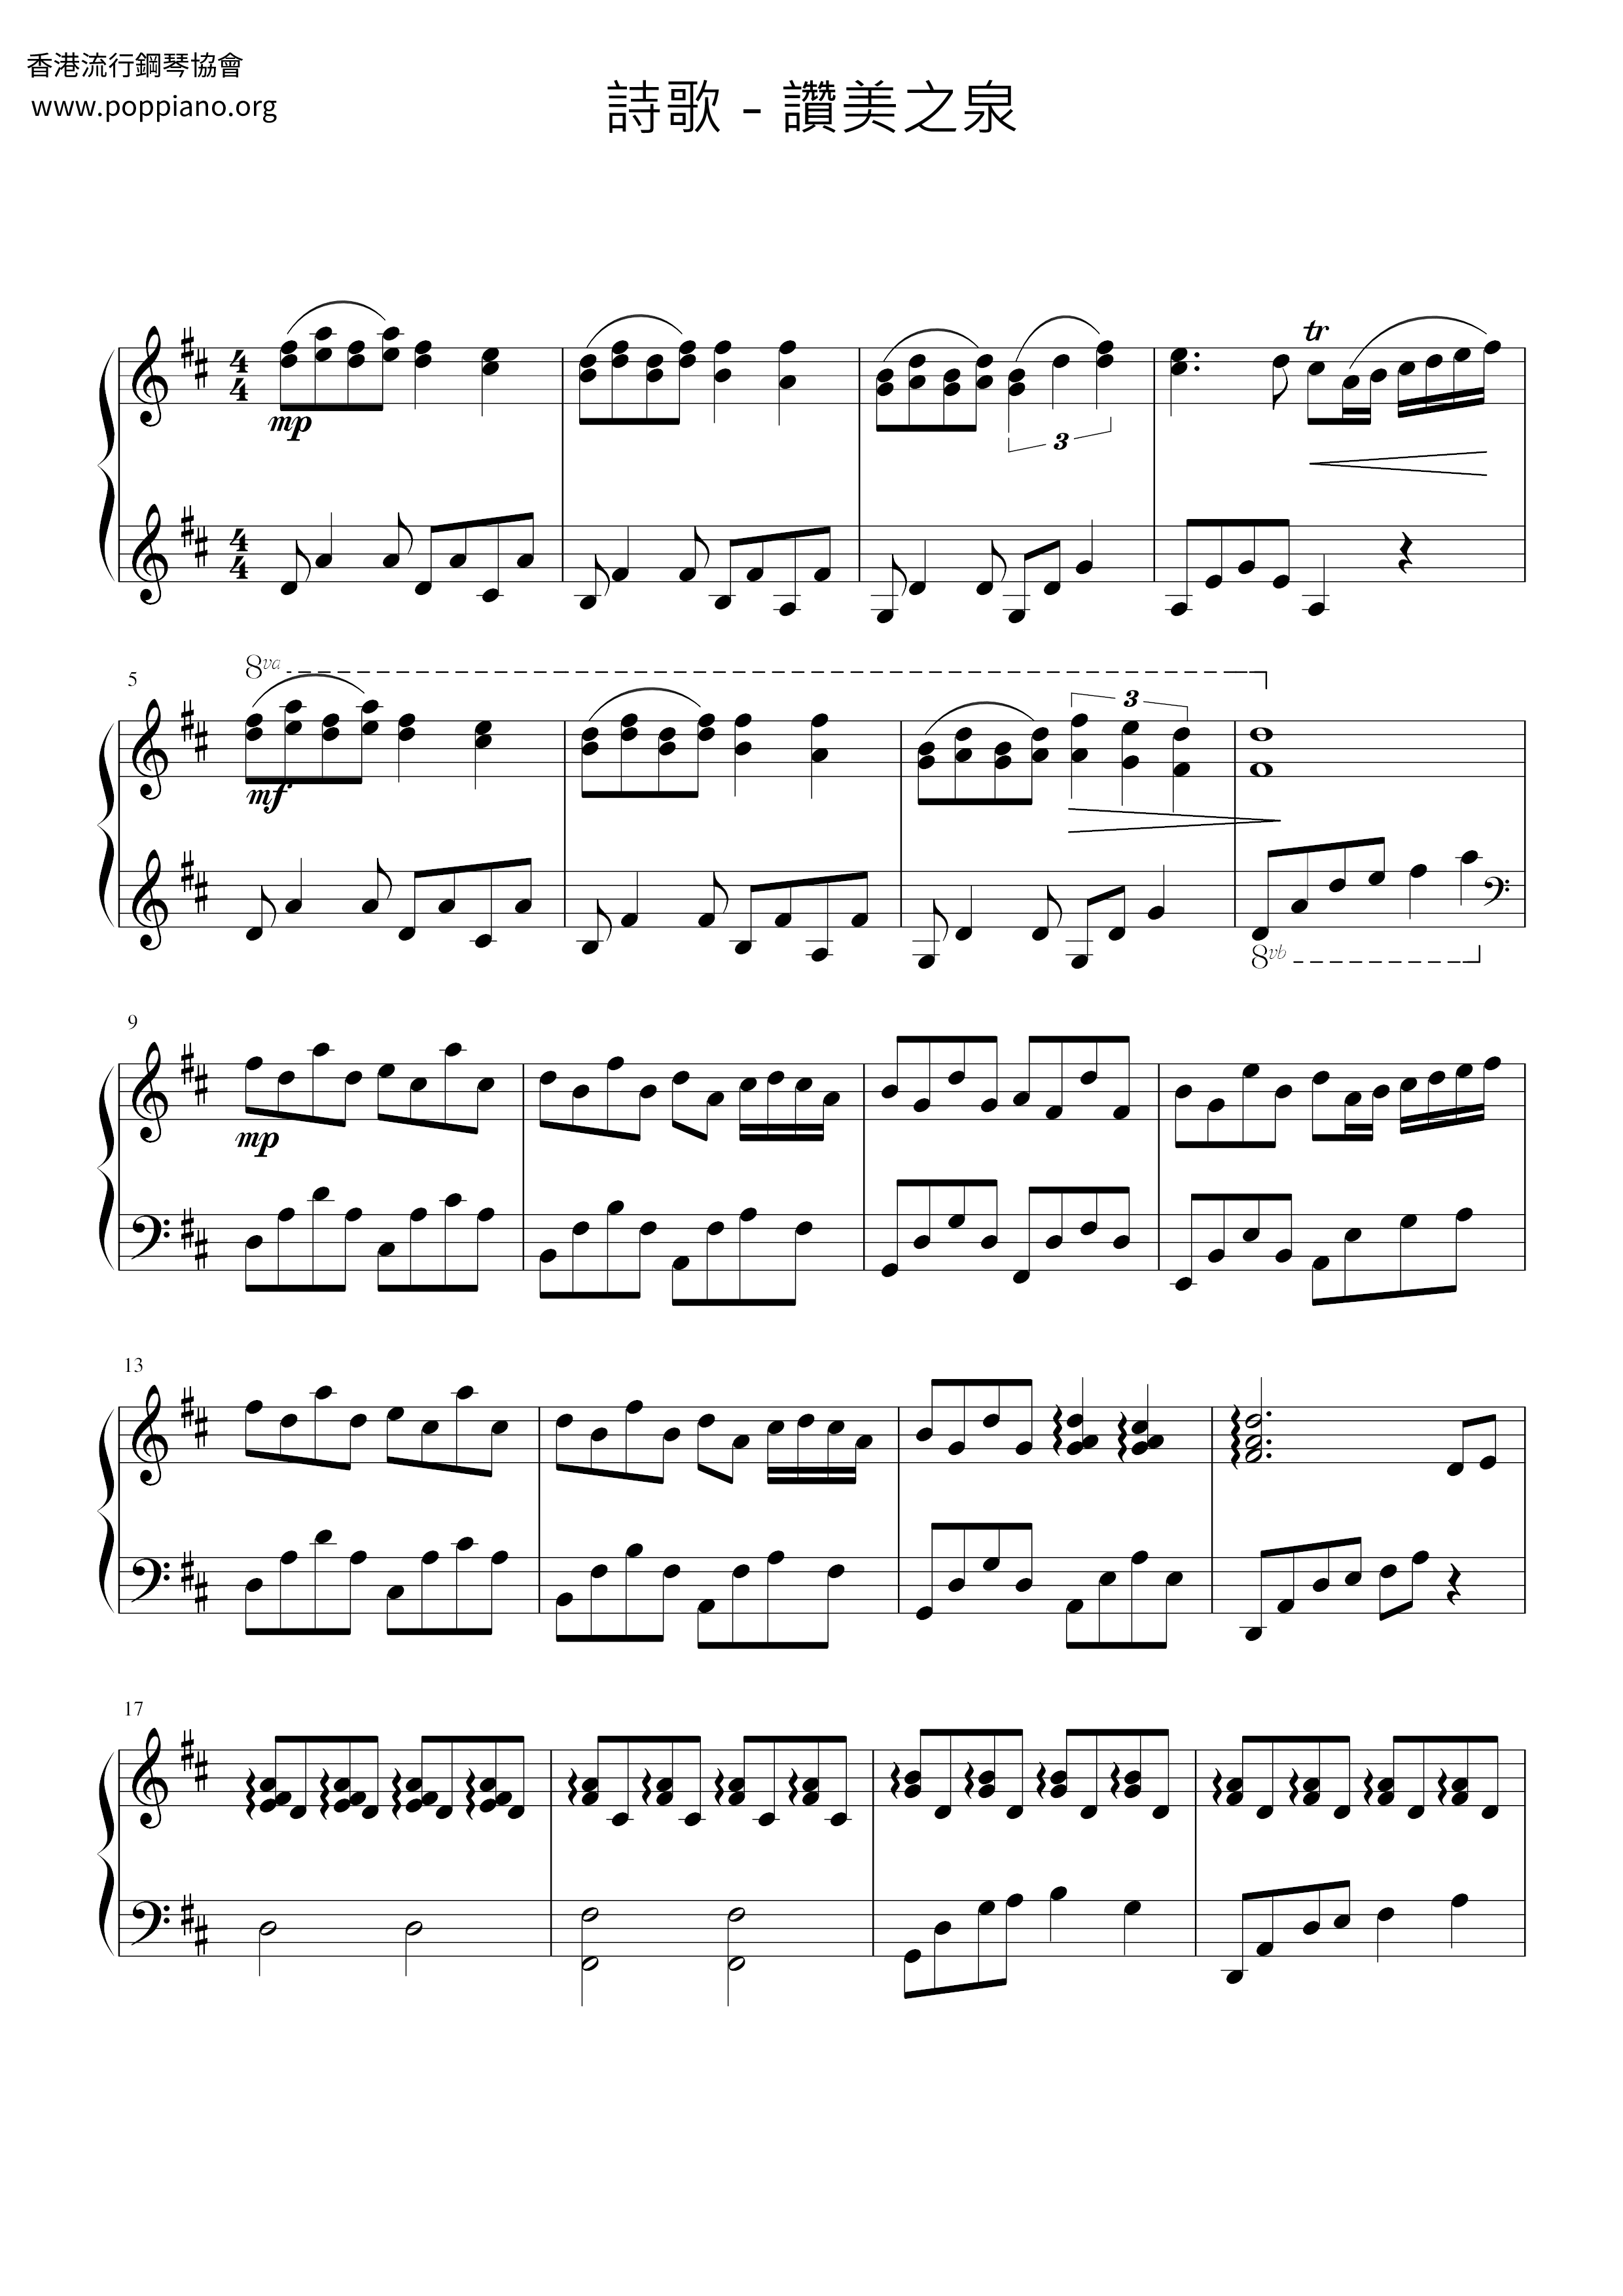 Stream Of Praise Score